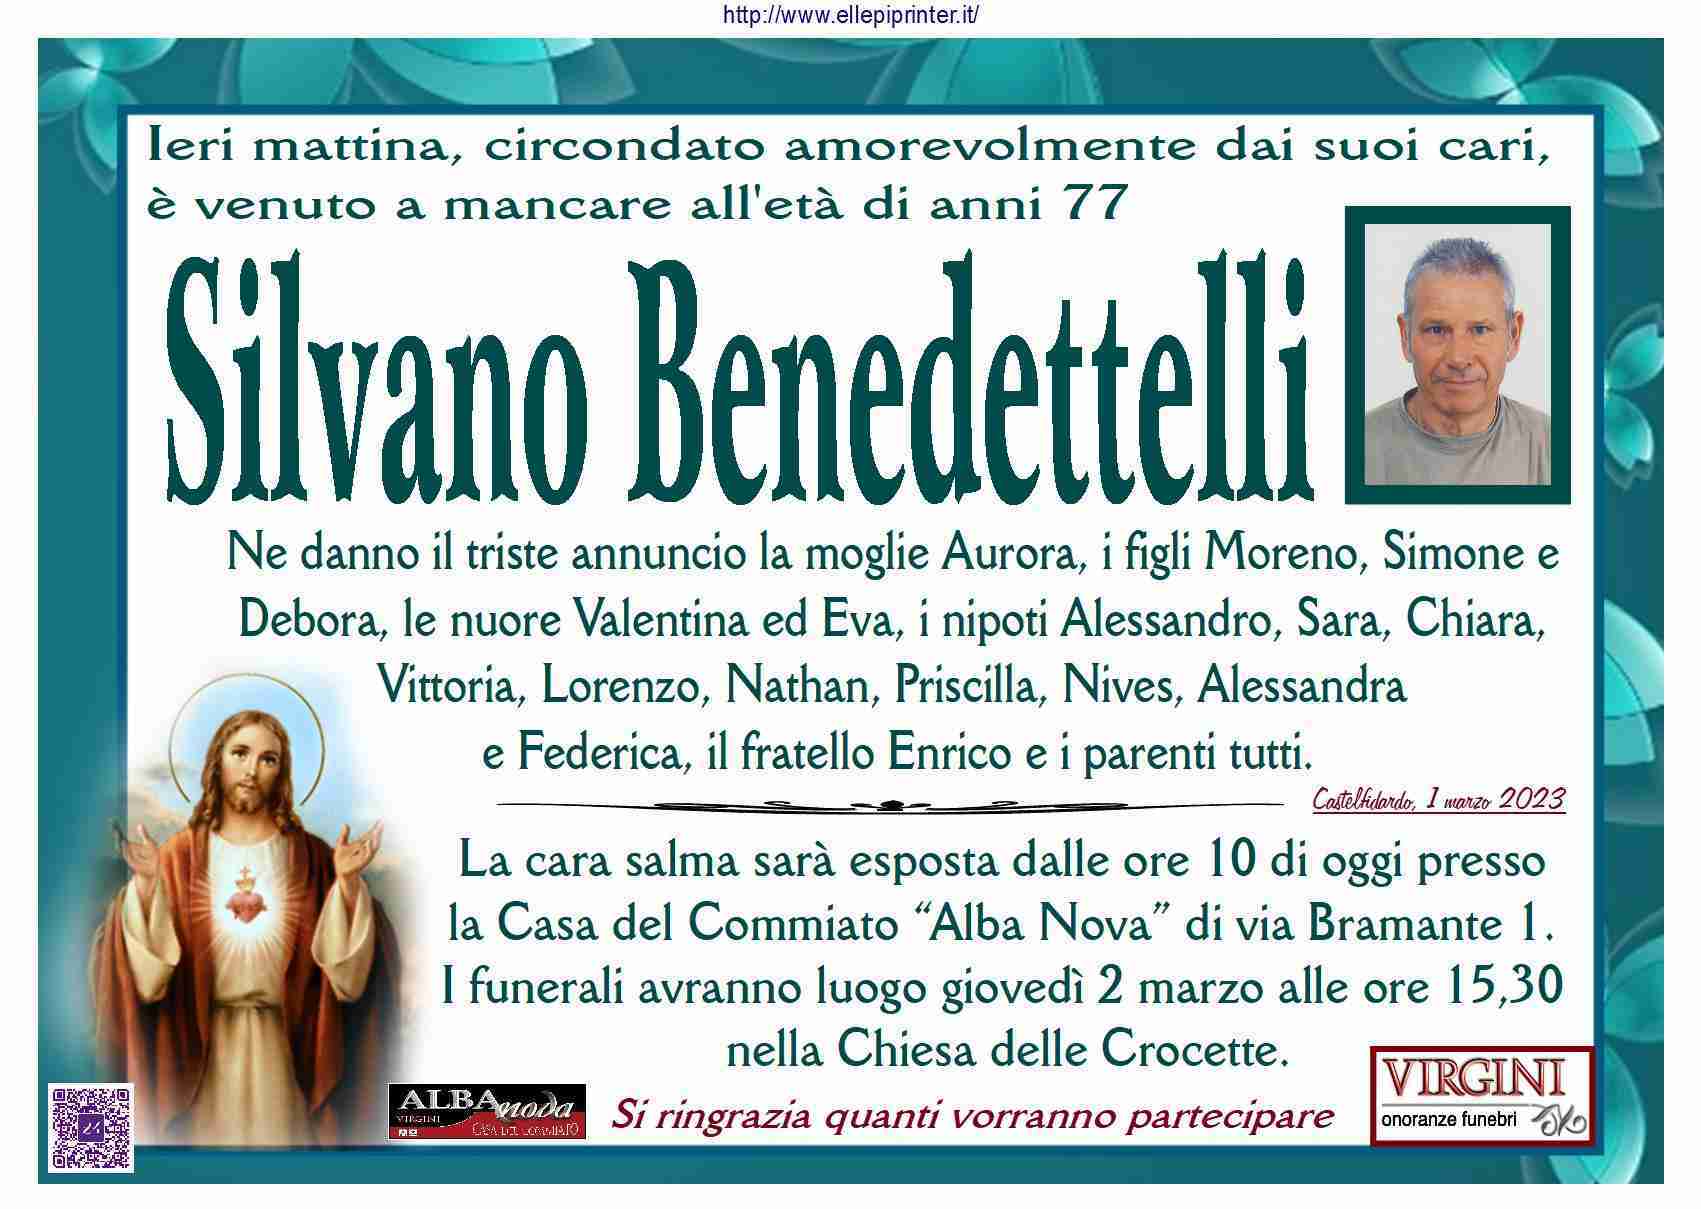 Silvano Benedettelli